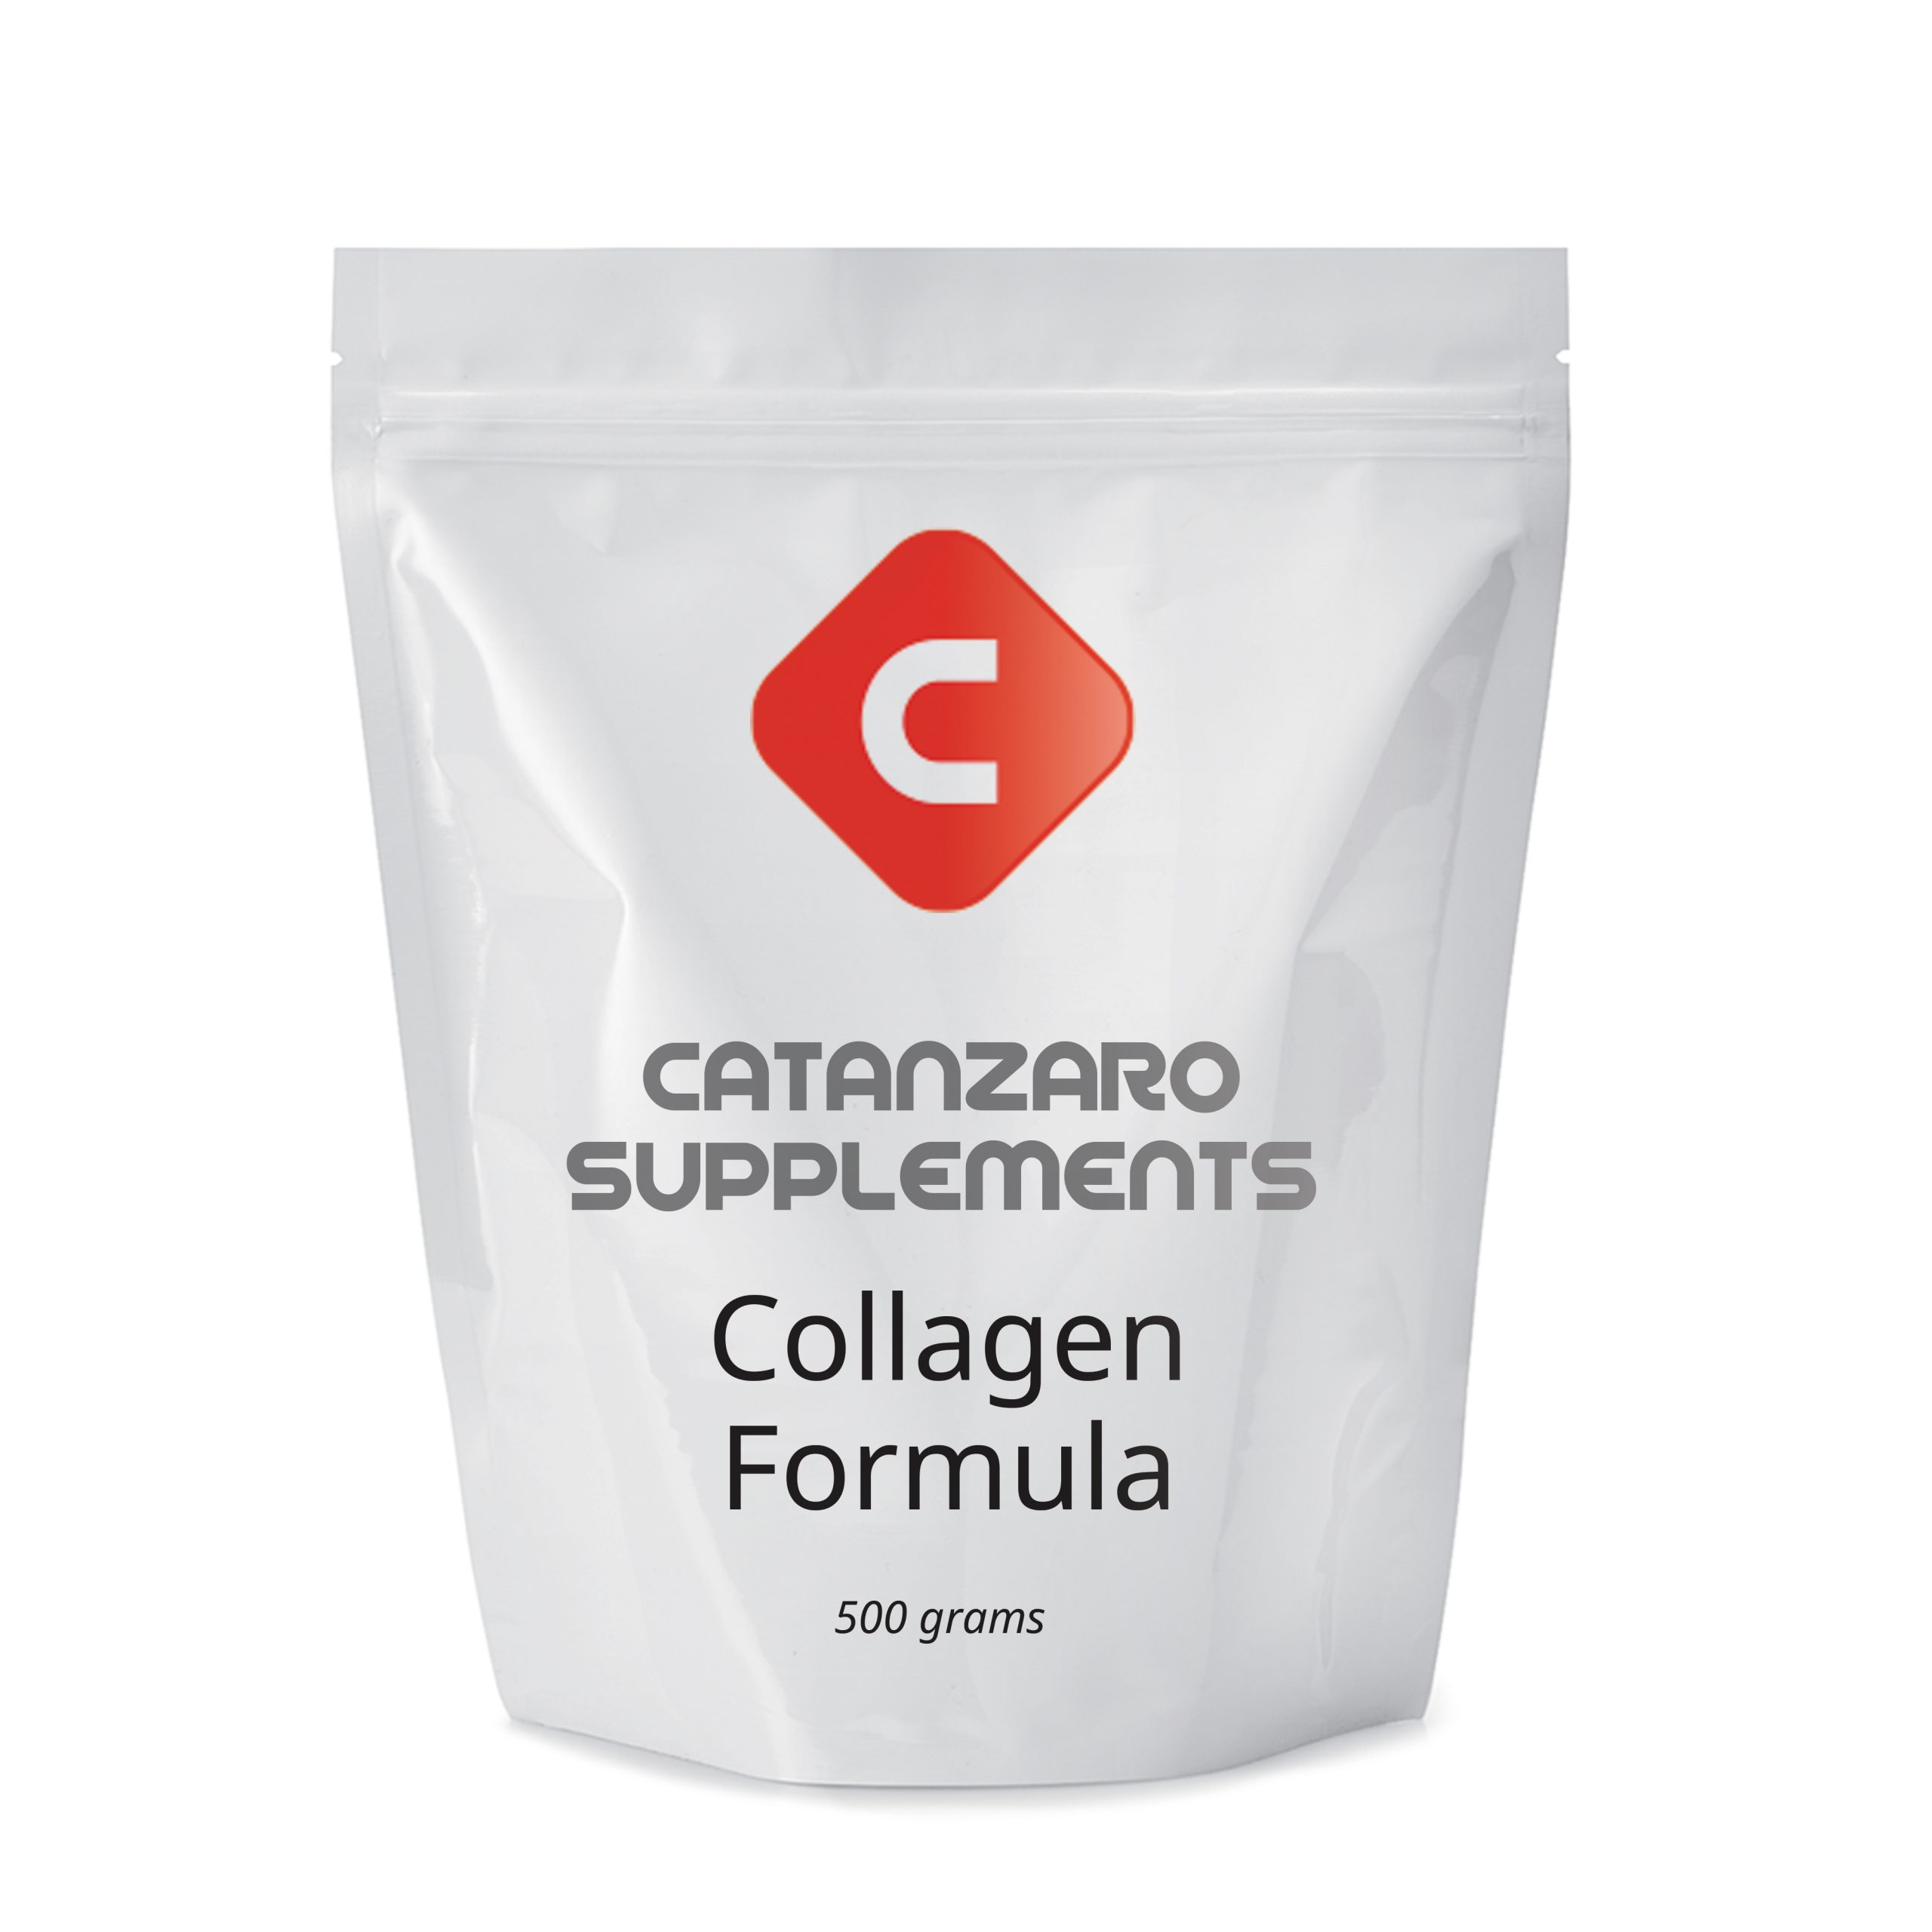 Catanzaro Supplements Collagen Formula